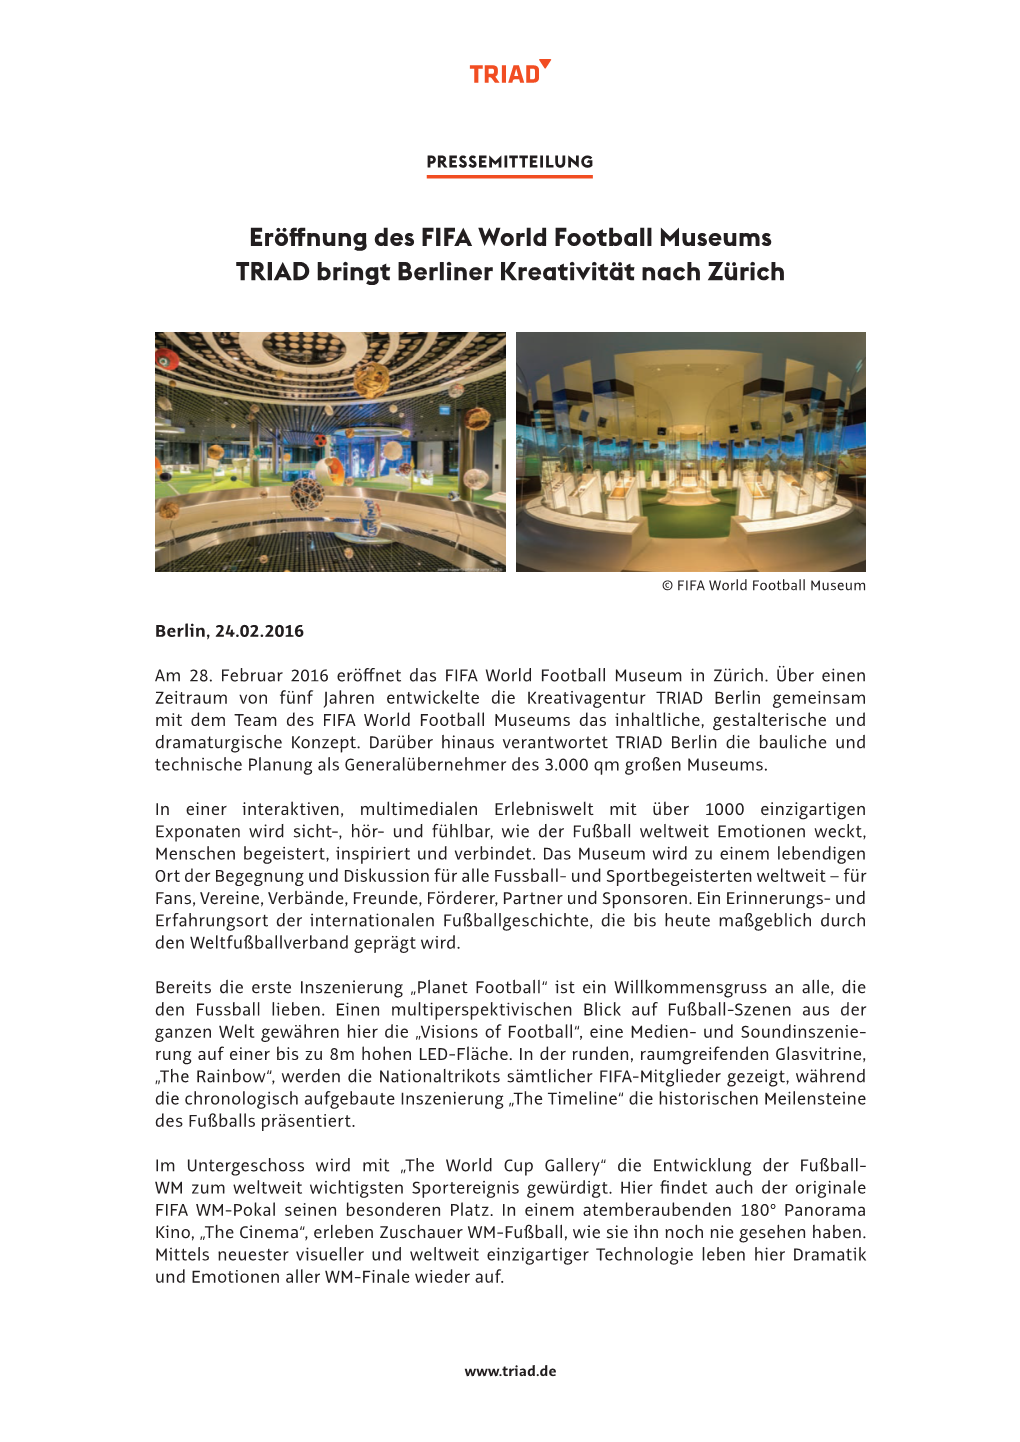 Eröffnung Des FIFA World Football Museums TRIAD Bringt Berliner Kreativität Nach Zürich